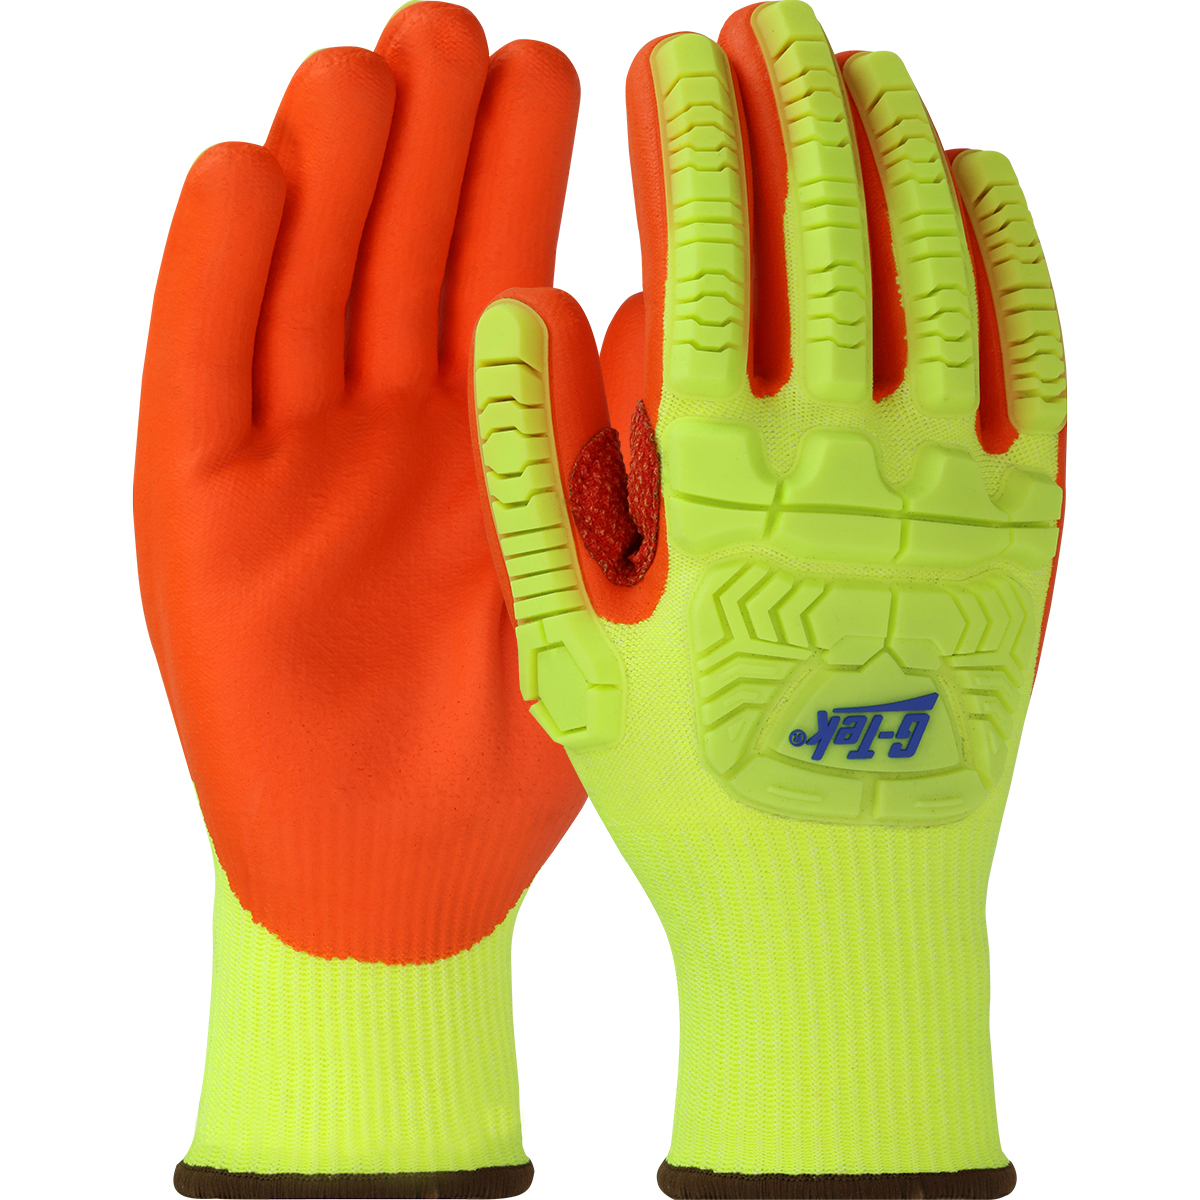 G-TEK HI-VIS IMPACT GLOVE NITRILE PALM - Tagged Gloves